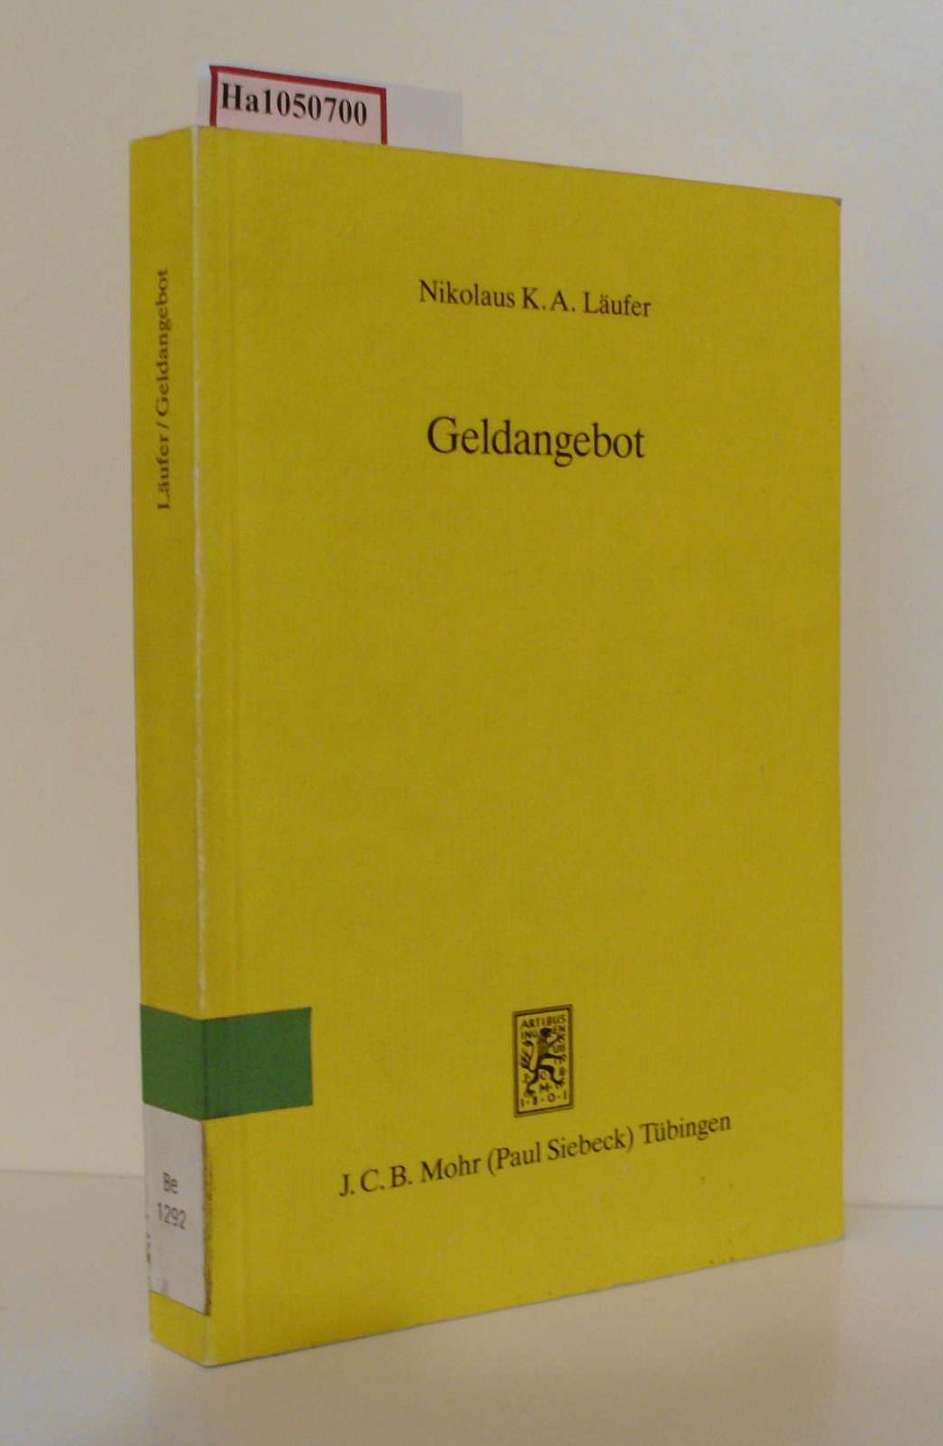 Geldangebot. Theorie und Politik. (=Schriften zur angewandten Wirtschaftsforschung 64). - Läufer, Nikolaus K. A.